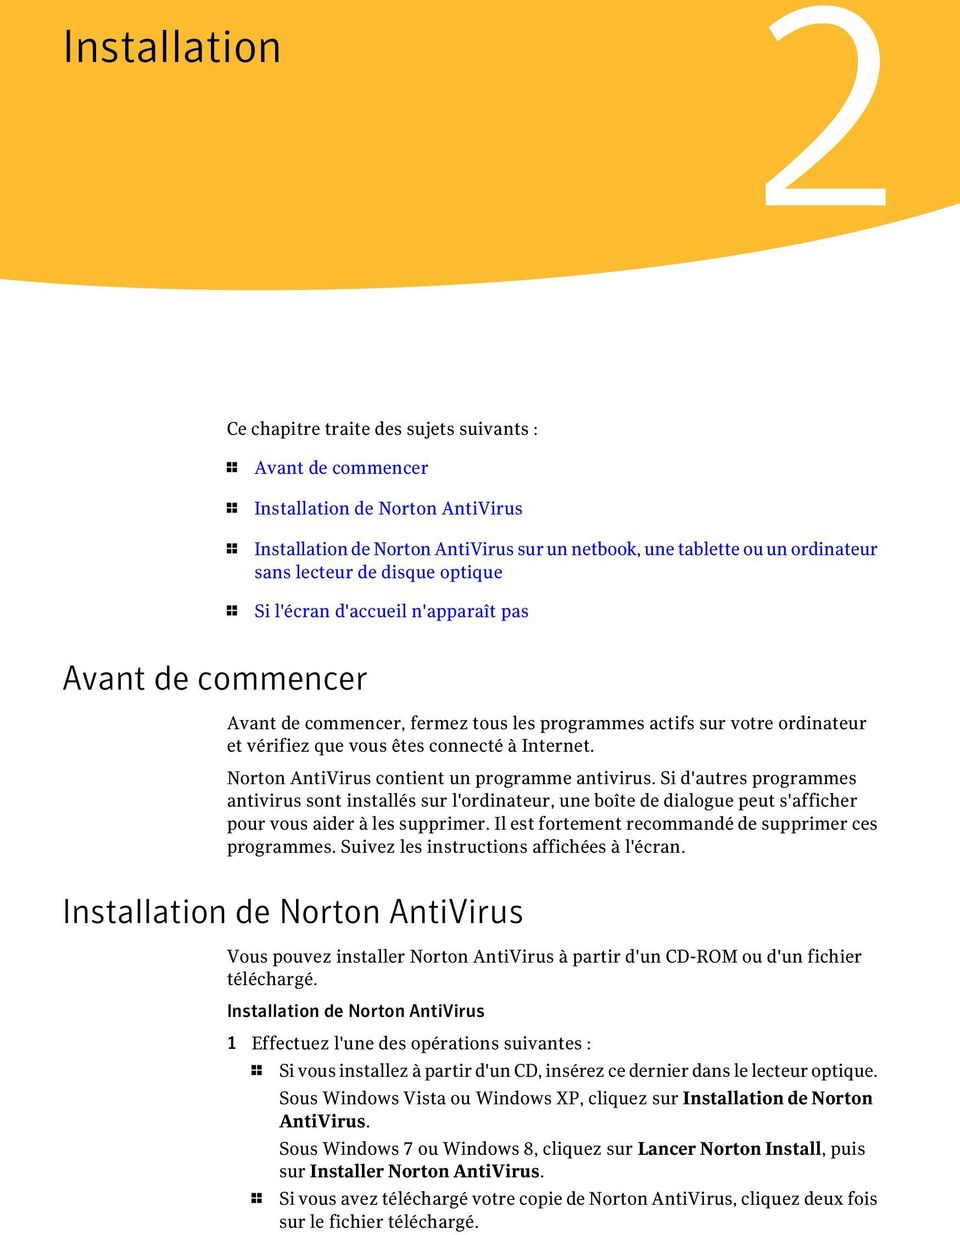 Internet. Norton AntiVirus contient un programme antivirus. Si d'autres programmes antivirus sont installés sur l'ordinateur, une boîte de dialogue peut s'afficher pour vous aider à les supprimer.